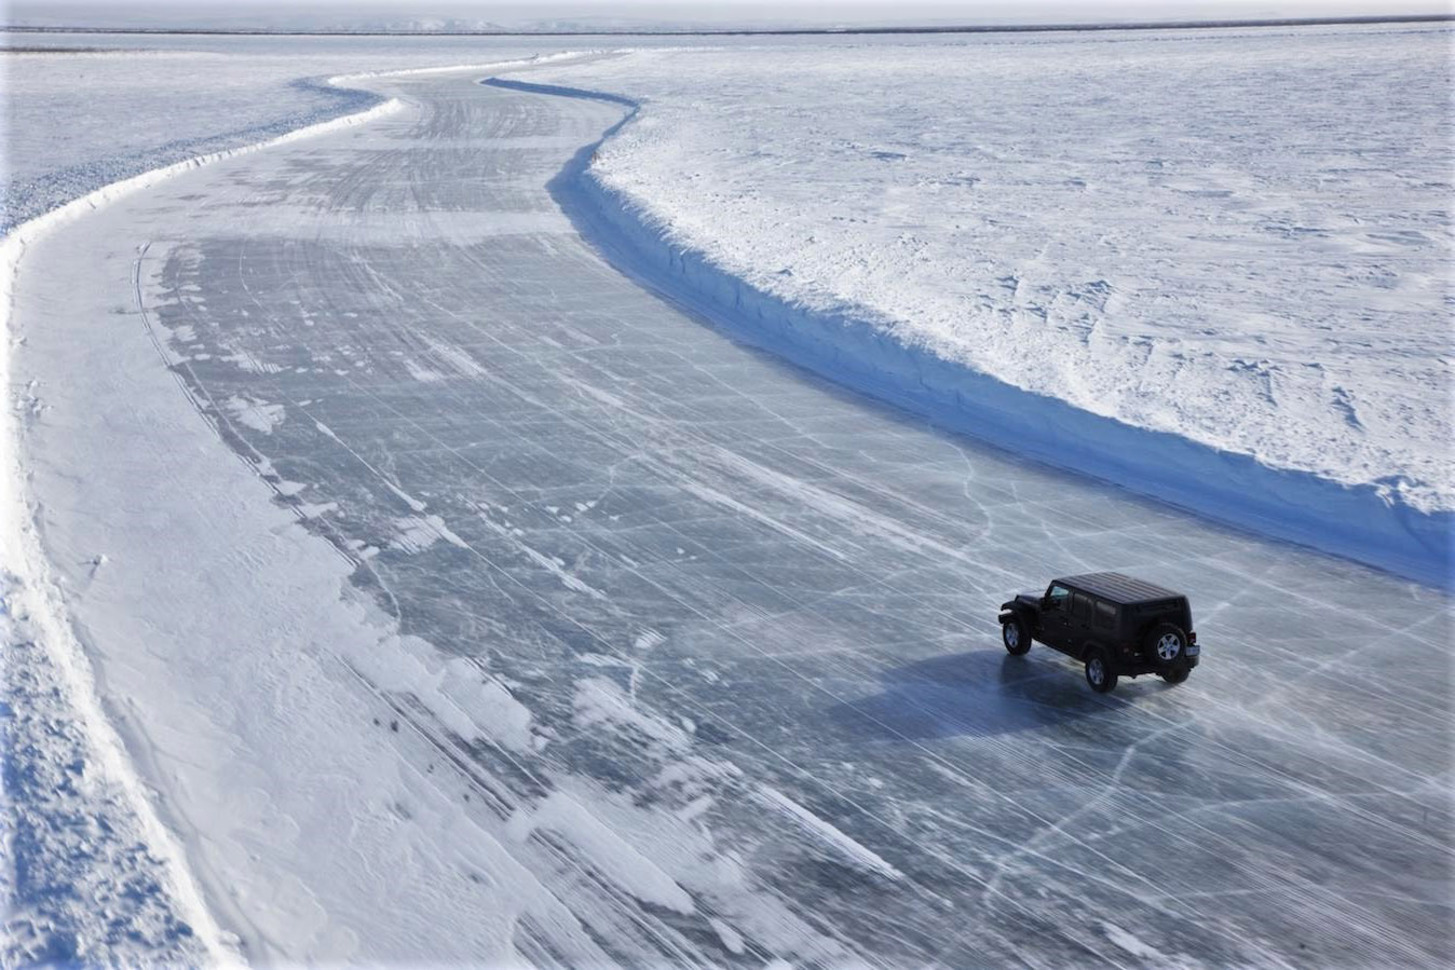 Дорога через лед